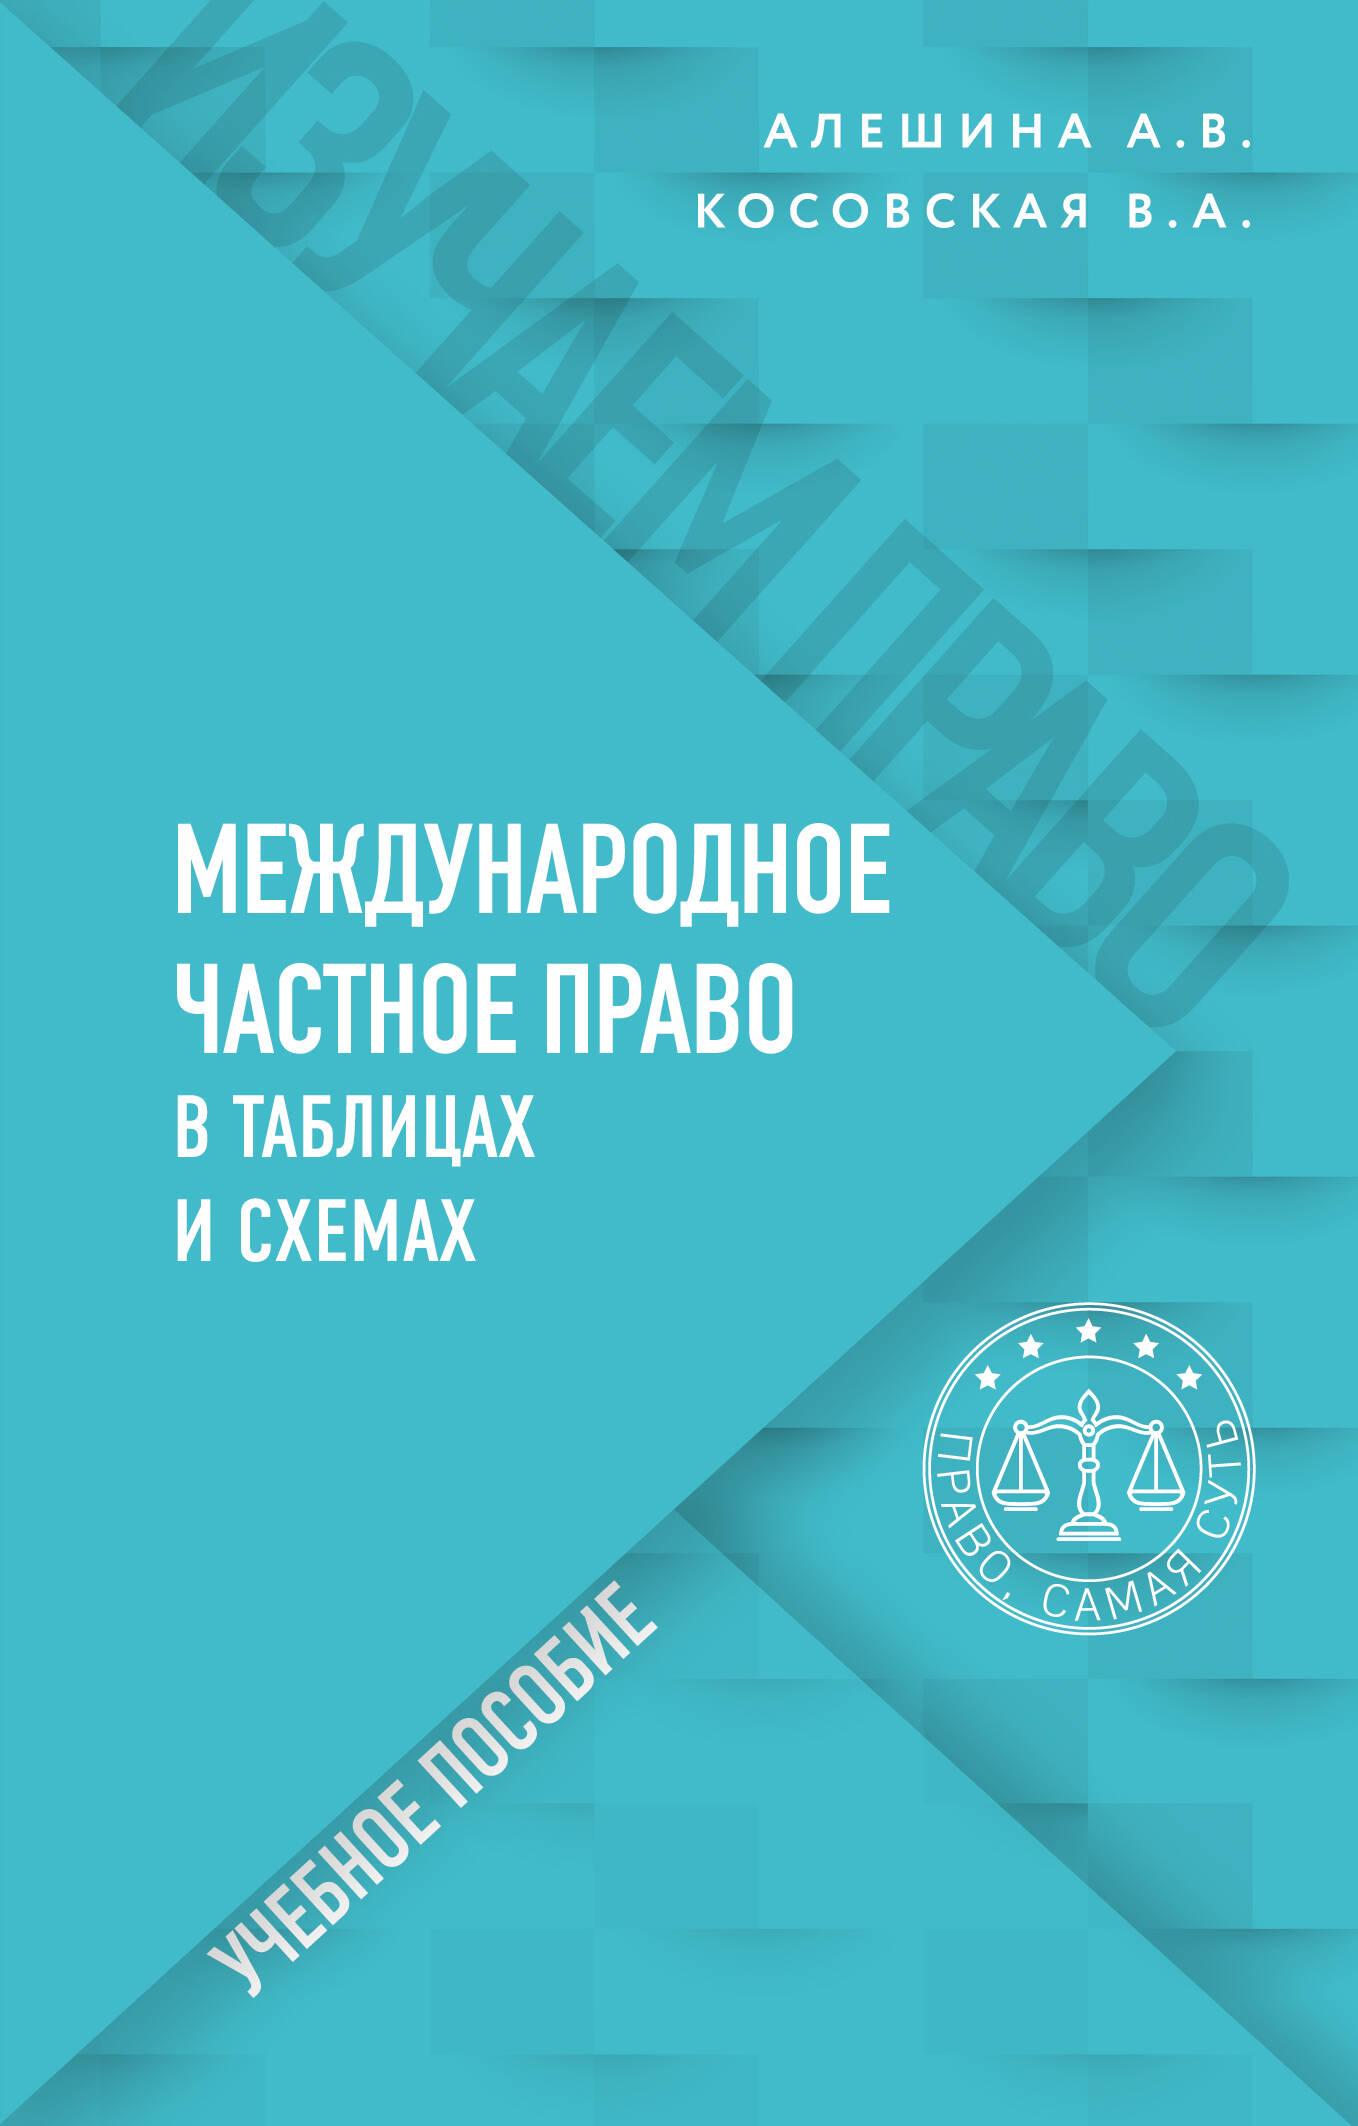 Алёшина Александра Владимировна - Международное частное право в таблицах и схемах